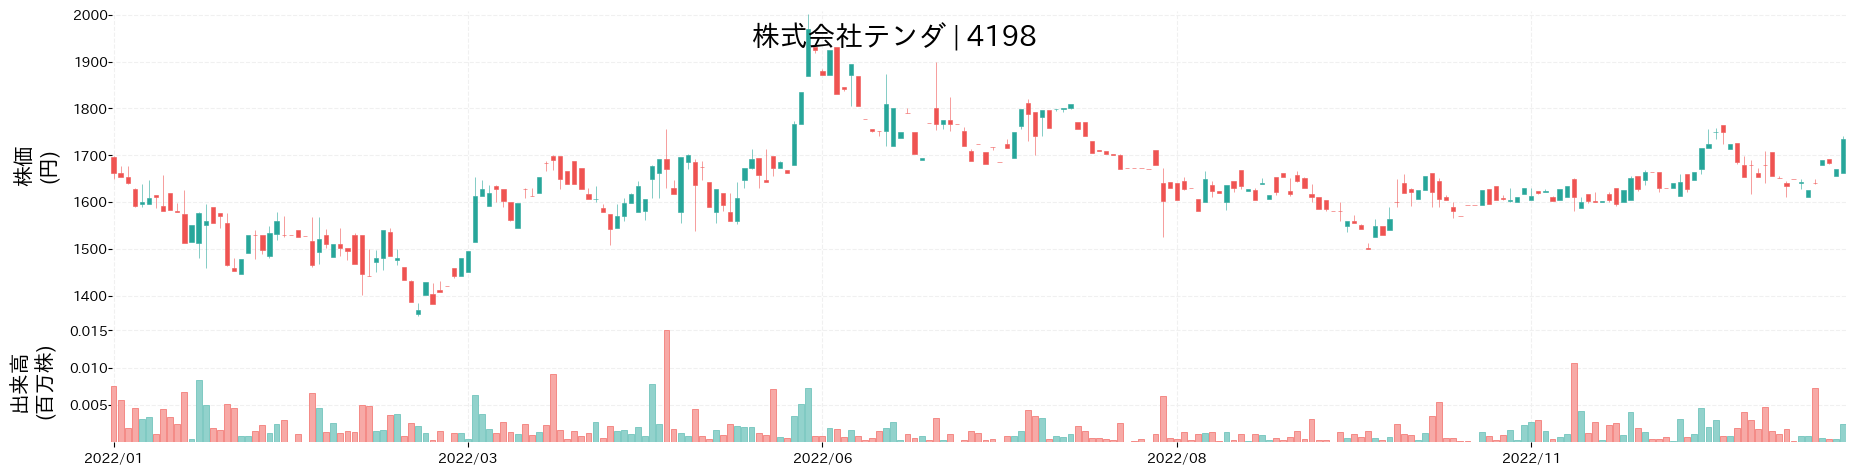 テンダの株価推移(2022)